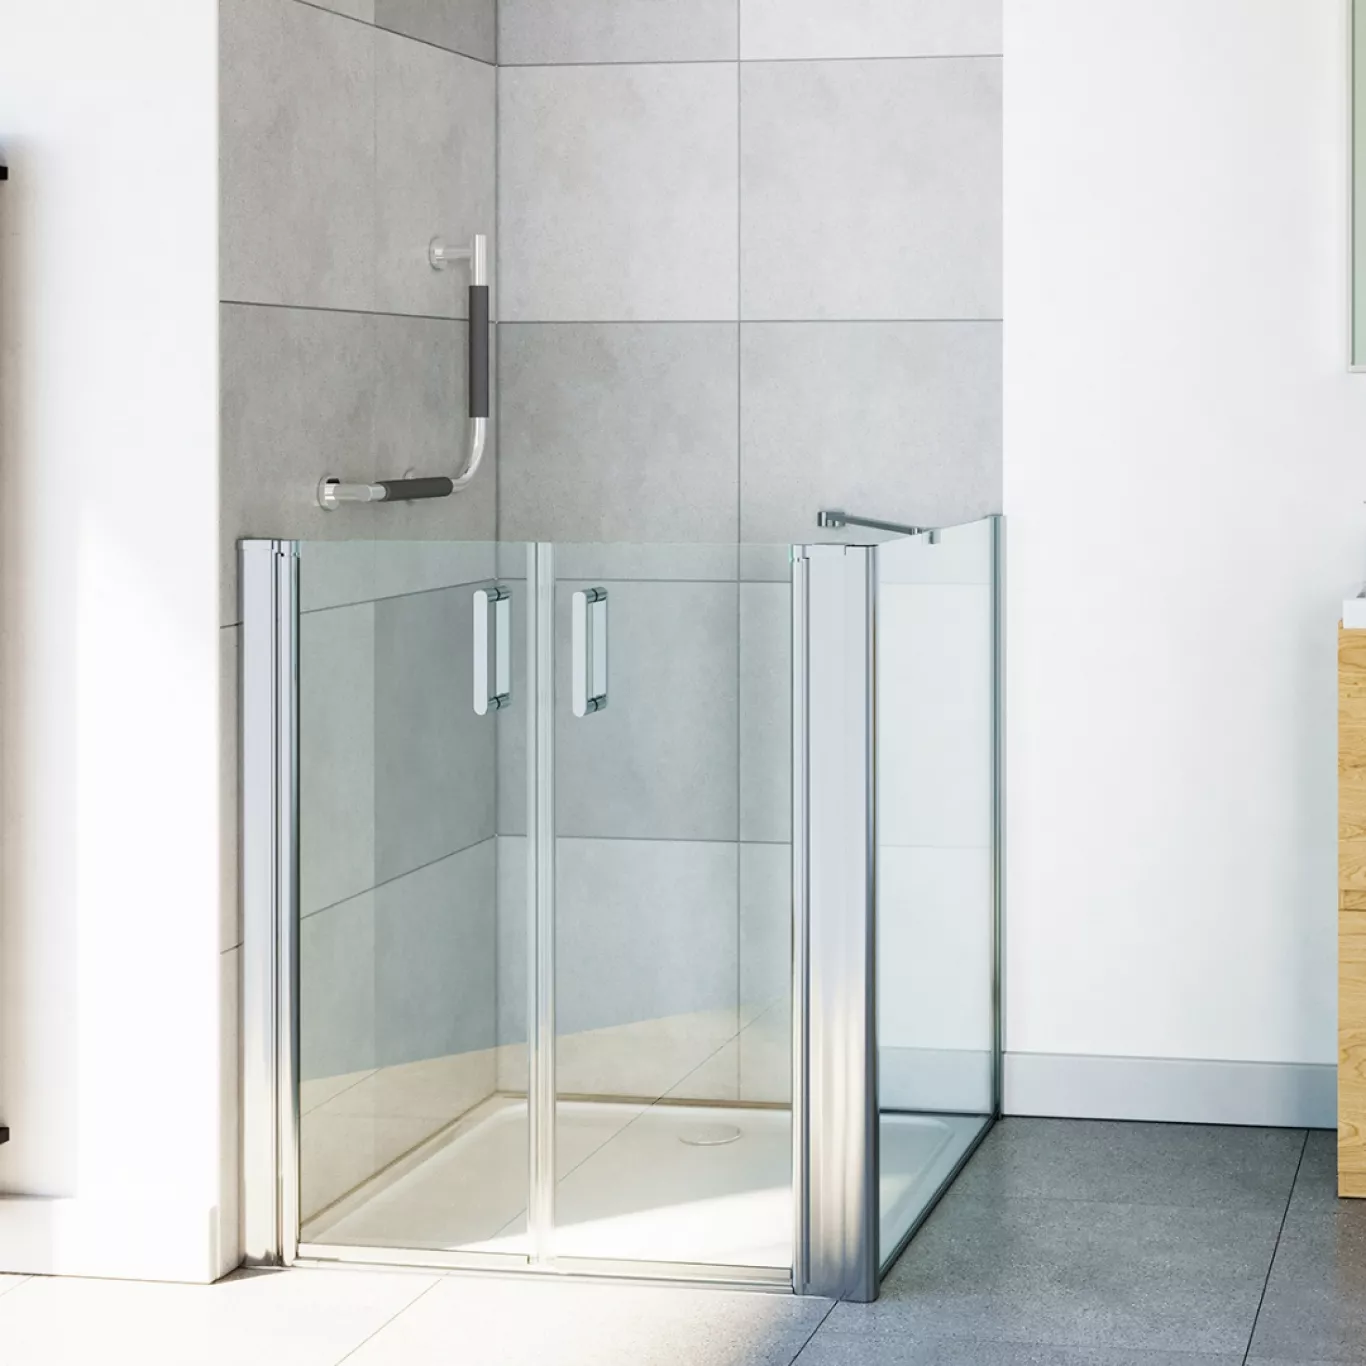 The Cara half-height shower door